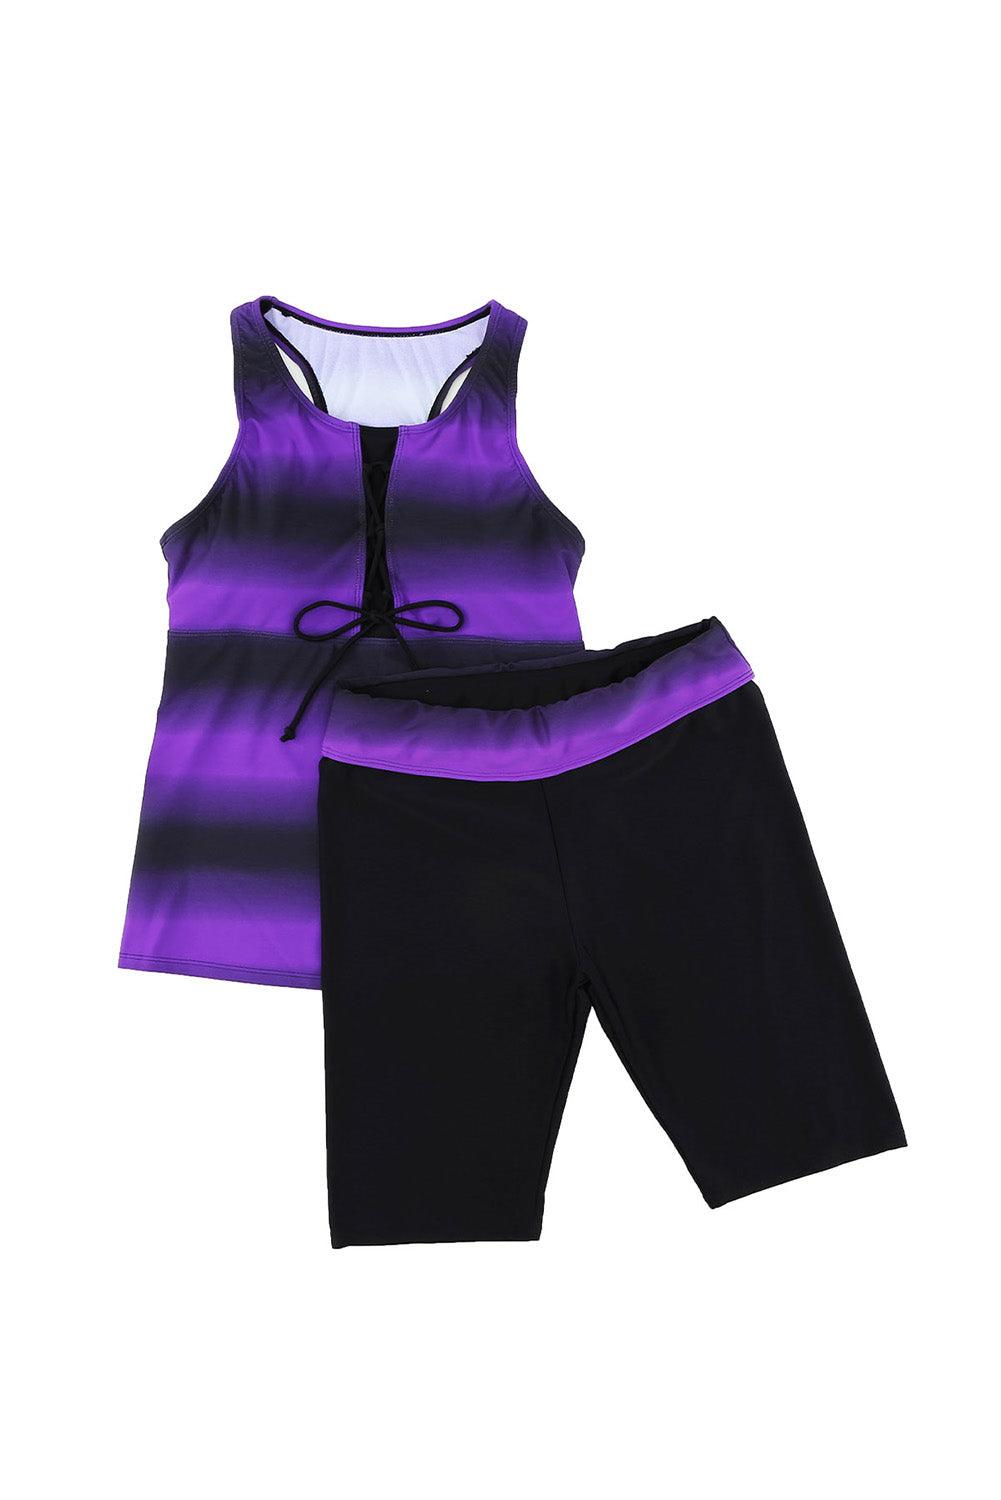 Stripe Floral Print Racerback Tankini Swimsuit - L & M Kee, LLC